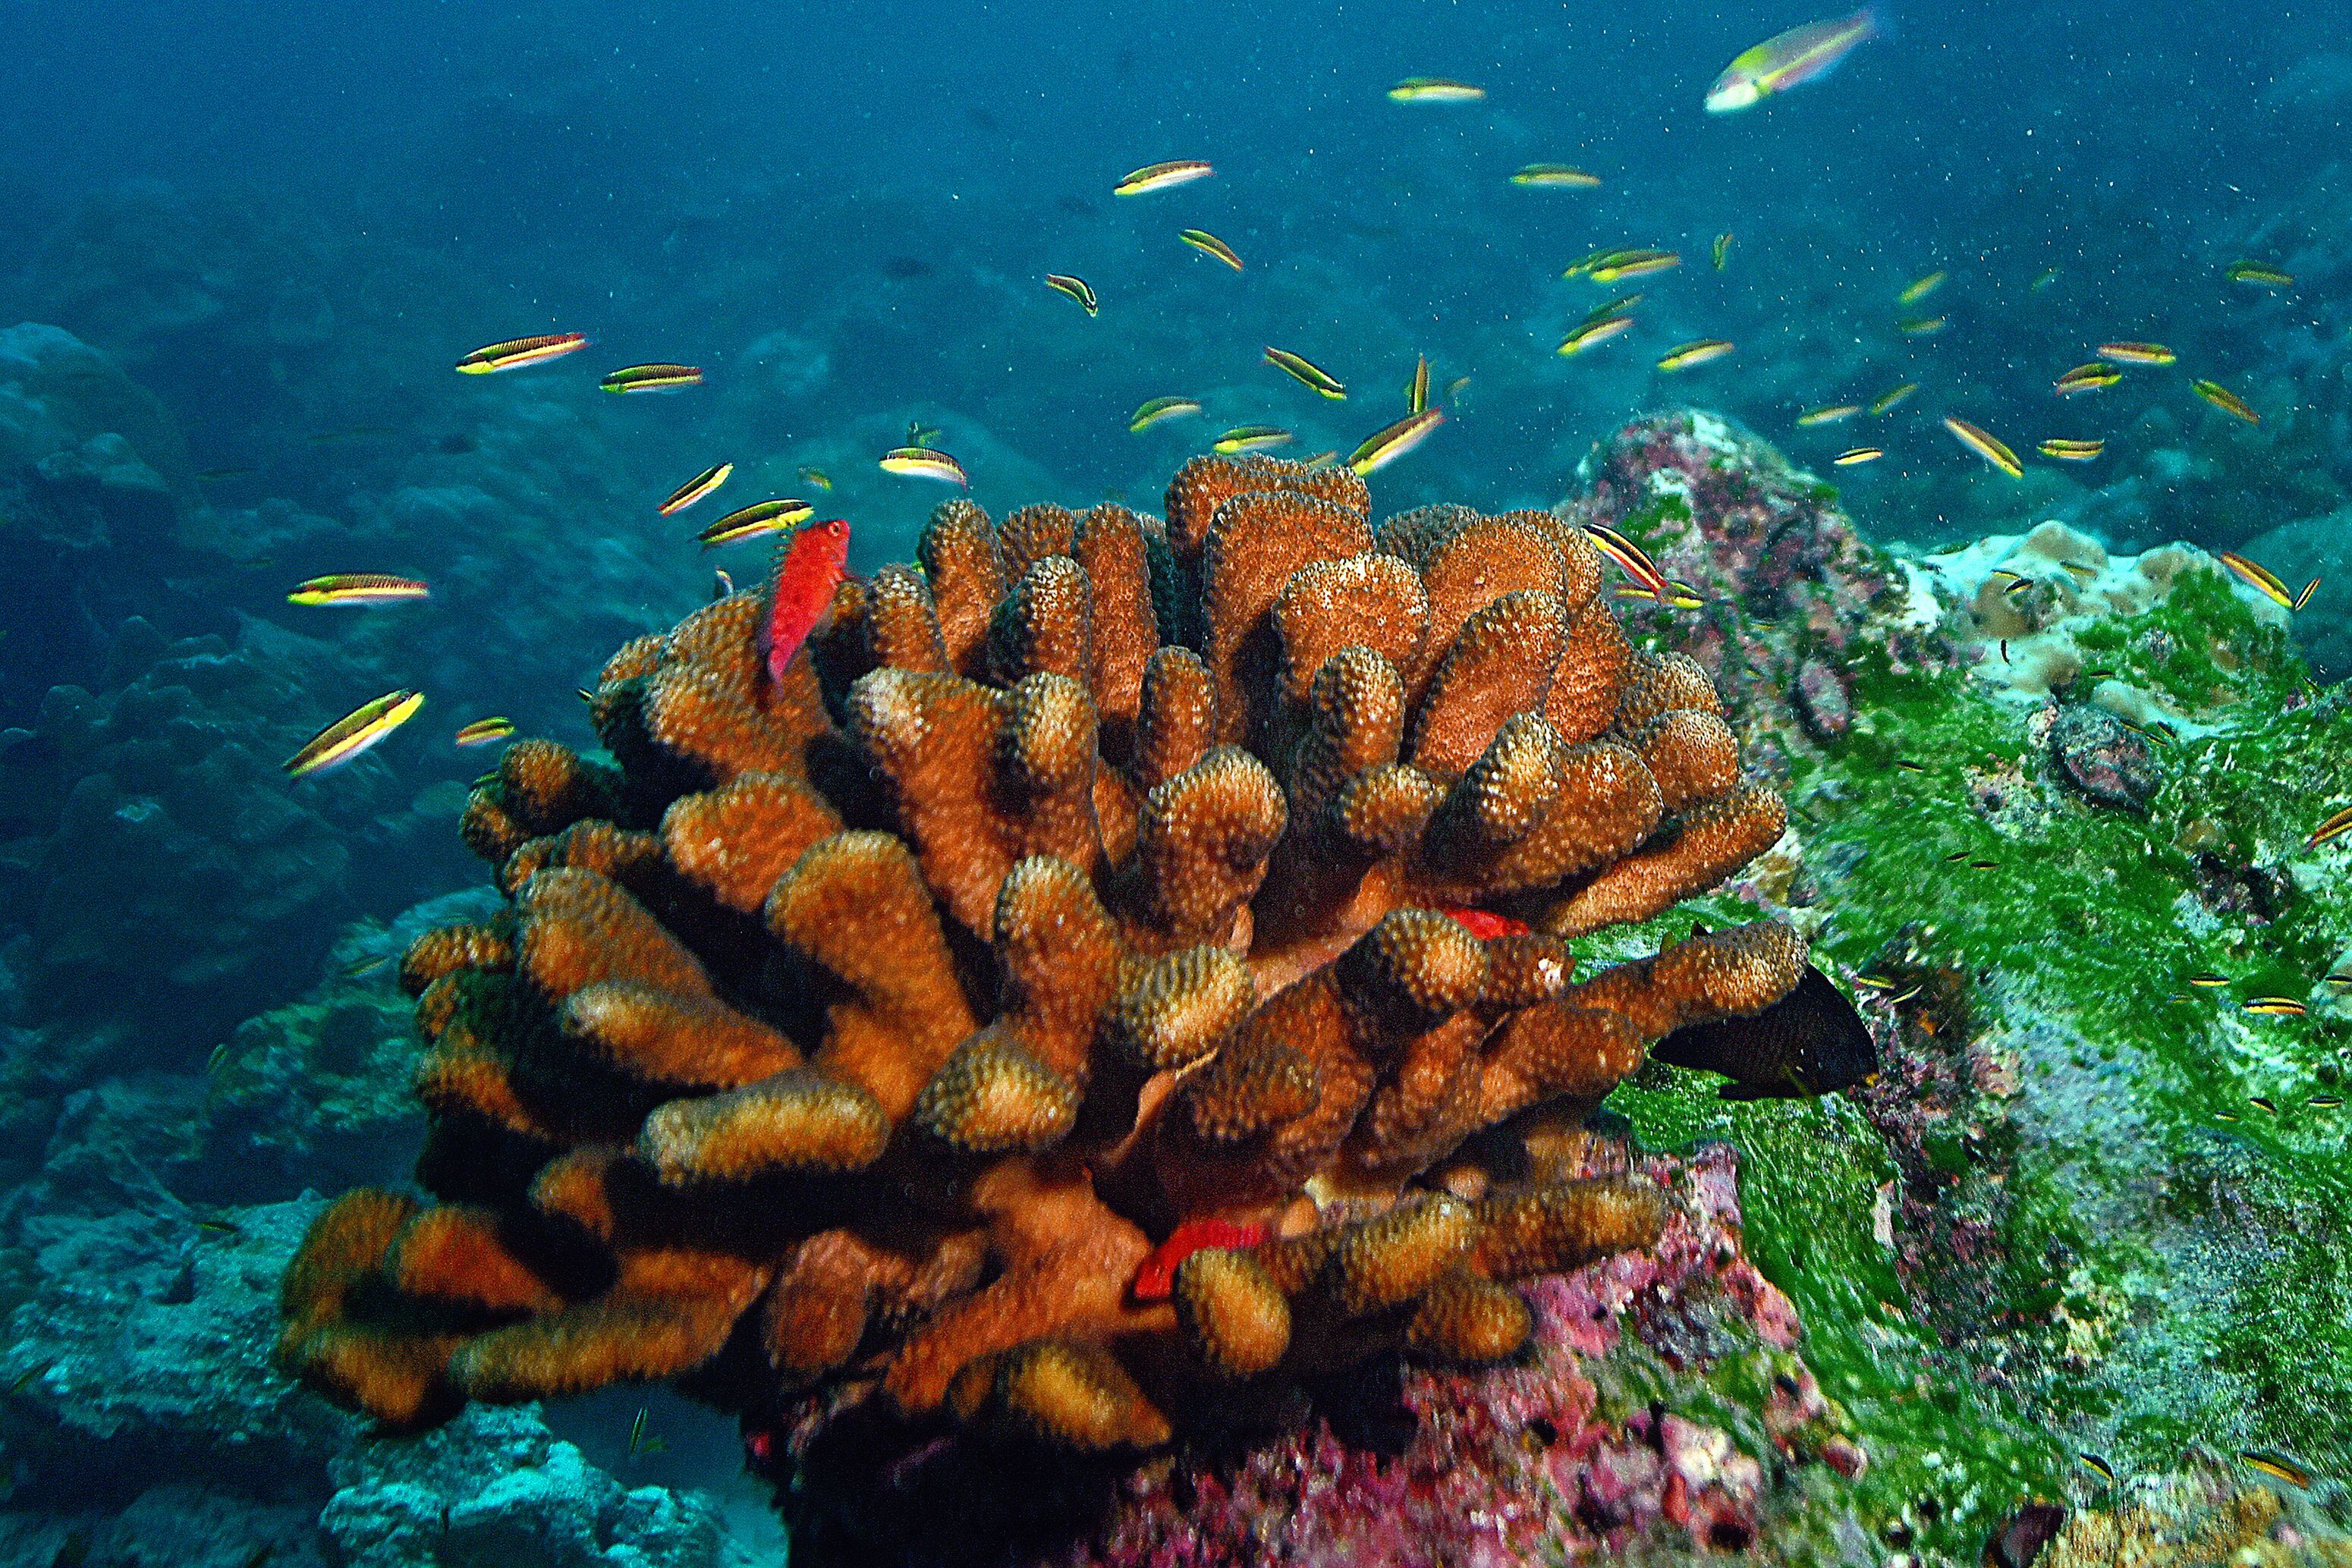 Los corales pueblan el fondo marino en el parque nacional. En medio de sus formaciones hay ecosistemas complejos y fascinantes. 